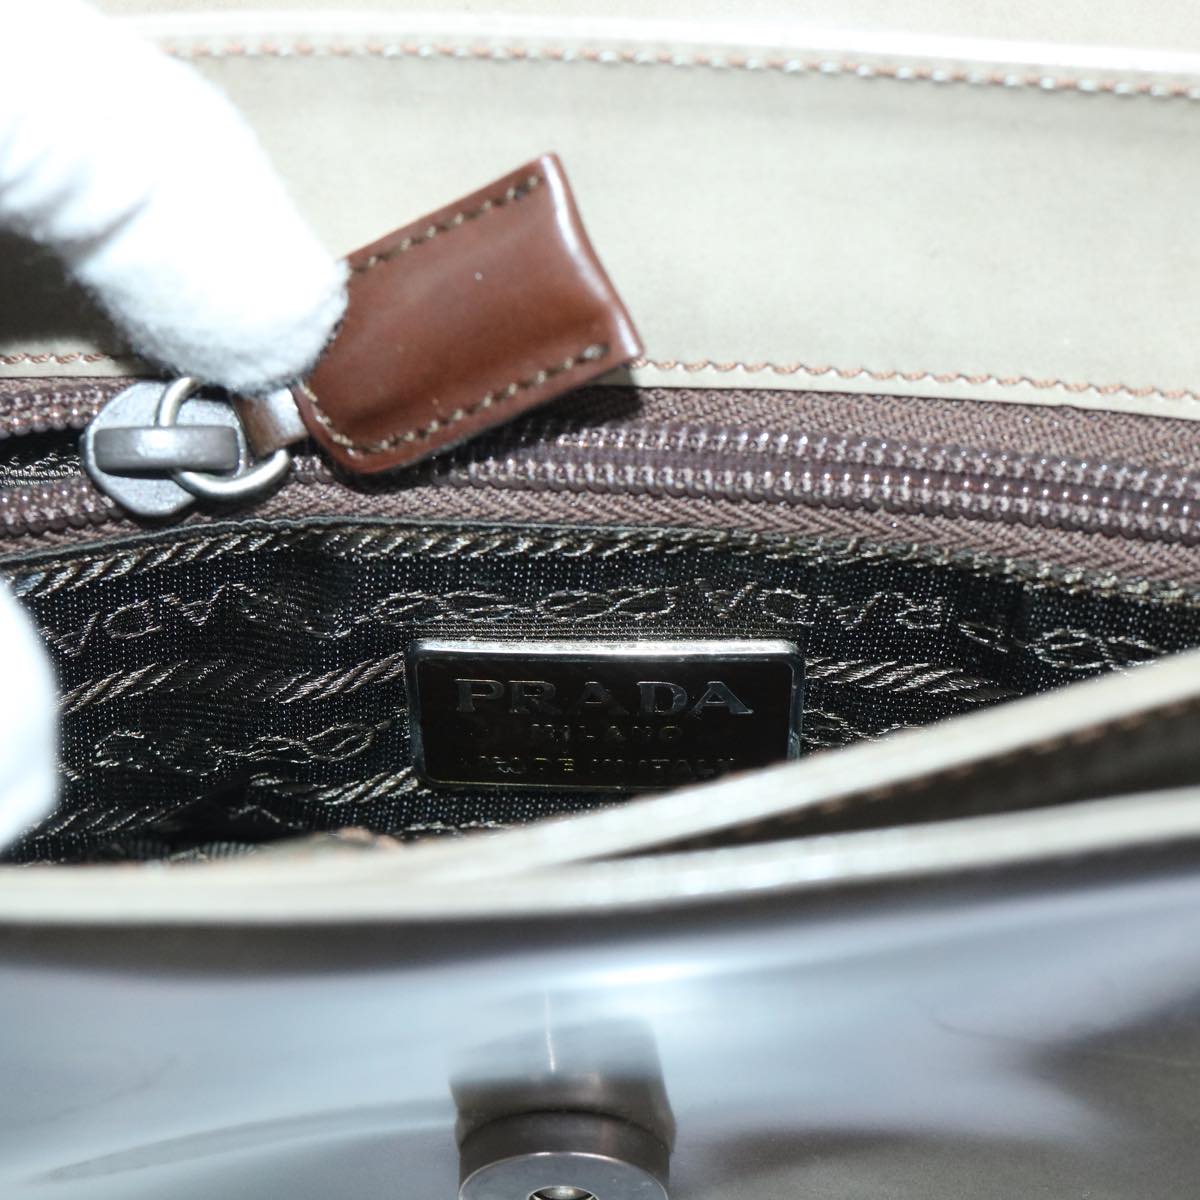 PRADA Hand Bag Patent leather Beige Auth 51310